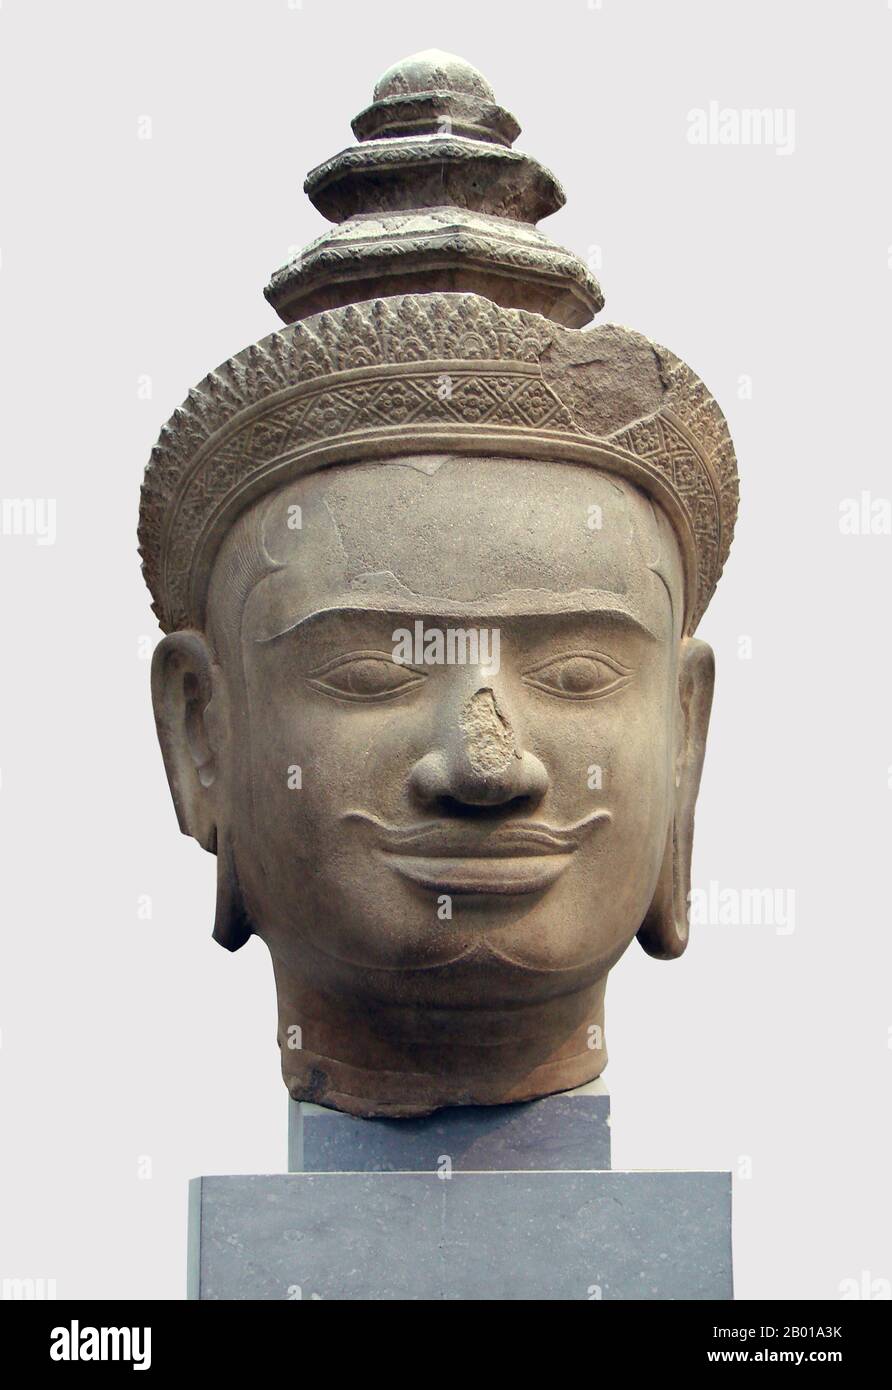 Cambogia: Capo di Vishnu da Phnom Bok, Siem Reap, ora nel Musée Guimet, Parigi, 9th-10th secolo. Phnom Bok è una collina nel nord-est del Baray orientale in Cambogia, con un prasat (tempio) dello stesso nome costruito su di esso. Si tratta di una 'trilogia di montagne', ognuna delle quali ha un tempio con una disposizione simile. La creazione del tempio è accreditata al regno di Yasovarman i (889–910) tra i secoli 9th e 10th ed è stata fondata dopo che ha spostato la sua capitale ad Angkor e la ha chiamata Yasodharapura. Gli altri due templi gemellati sono Phnom Bakheng e Phnom Krom. Foto Stock